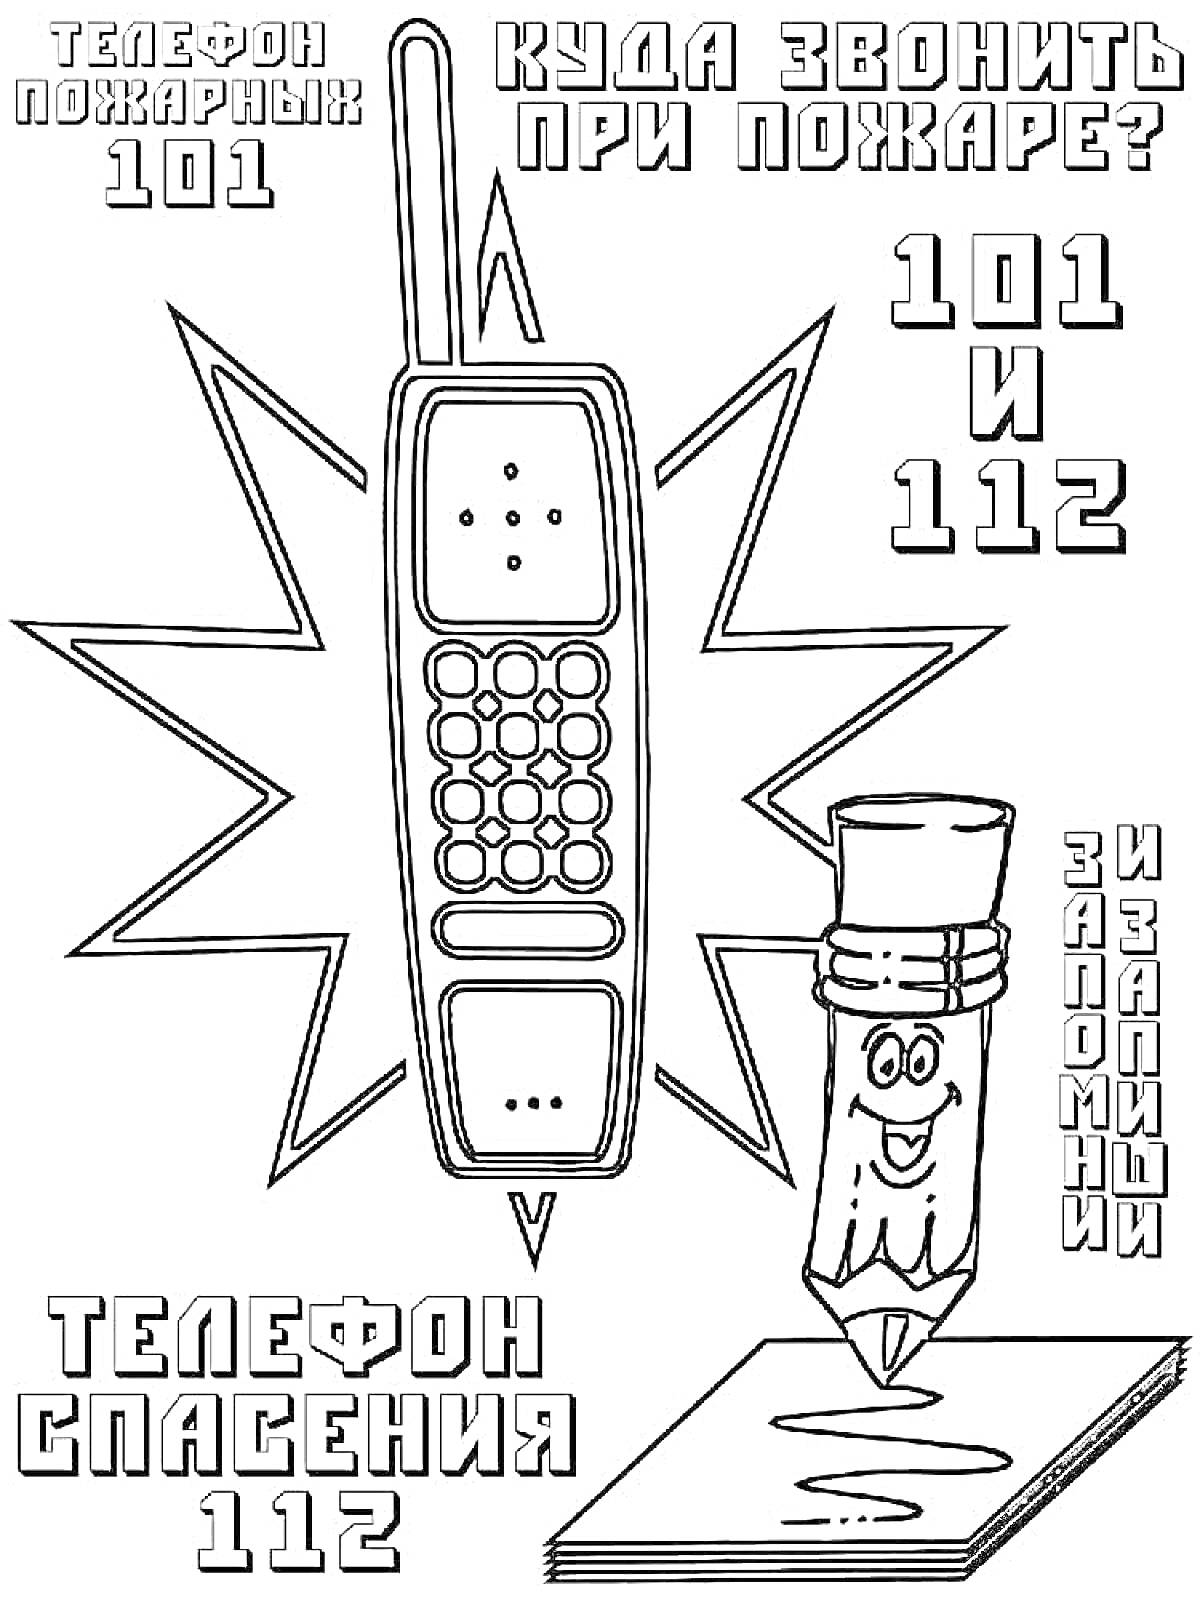 Раскраска Раскраска с изображением телефона, карандаша с улыбающимся лицом, номера телефонов пожарной службы (101) и службы спасения (112)